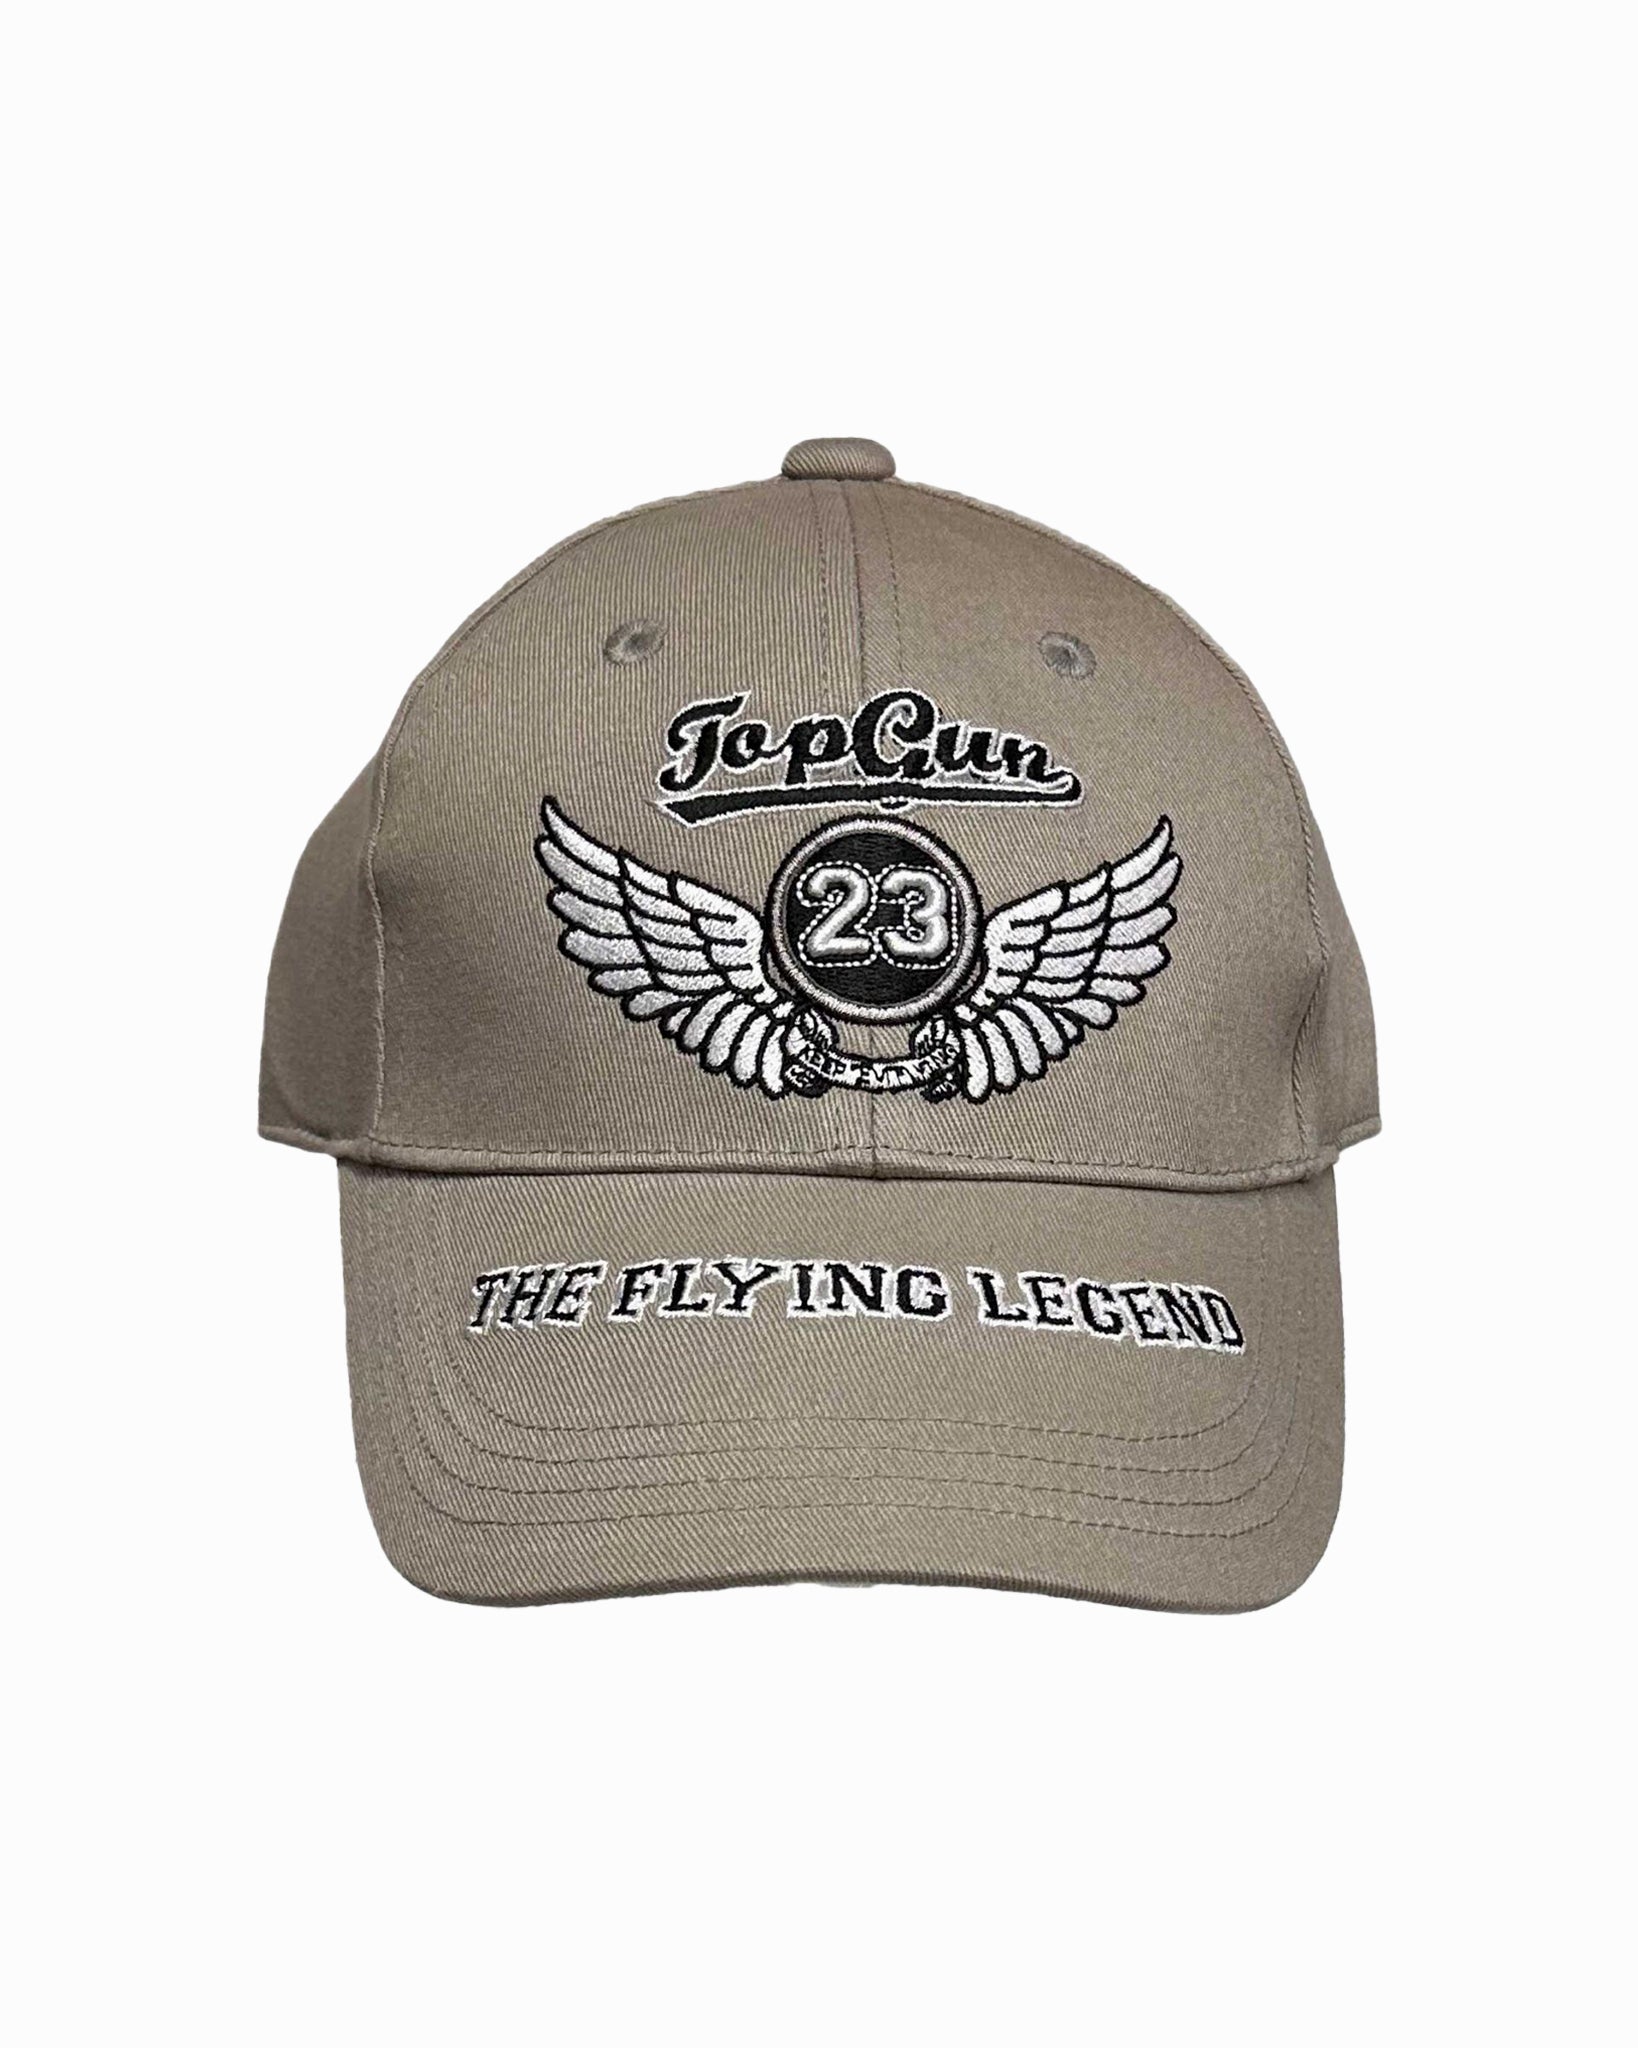 TOP GUN® KIDS' "THE FLYING LEGEND" CAP